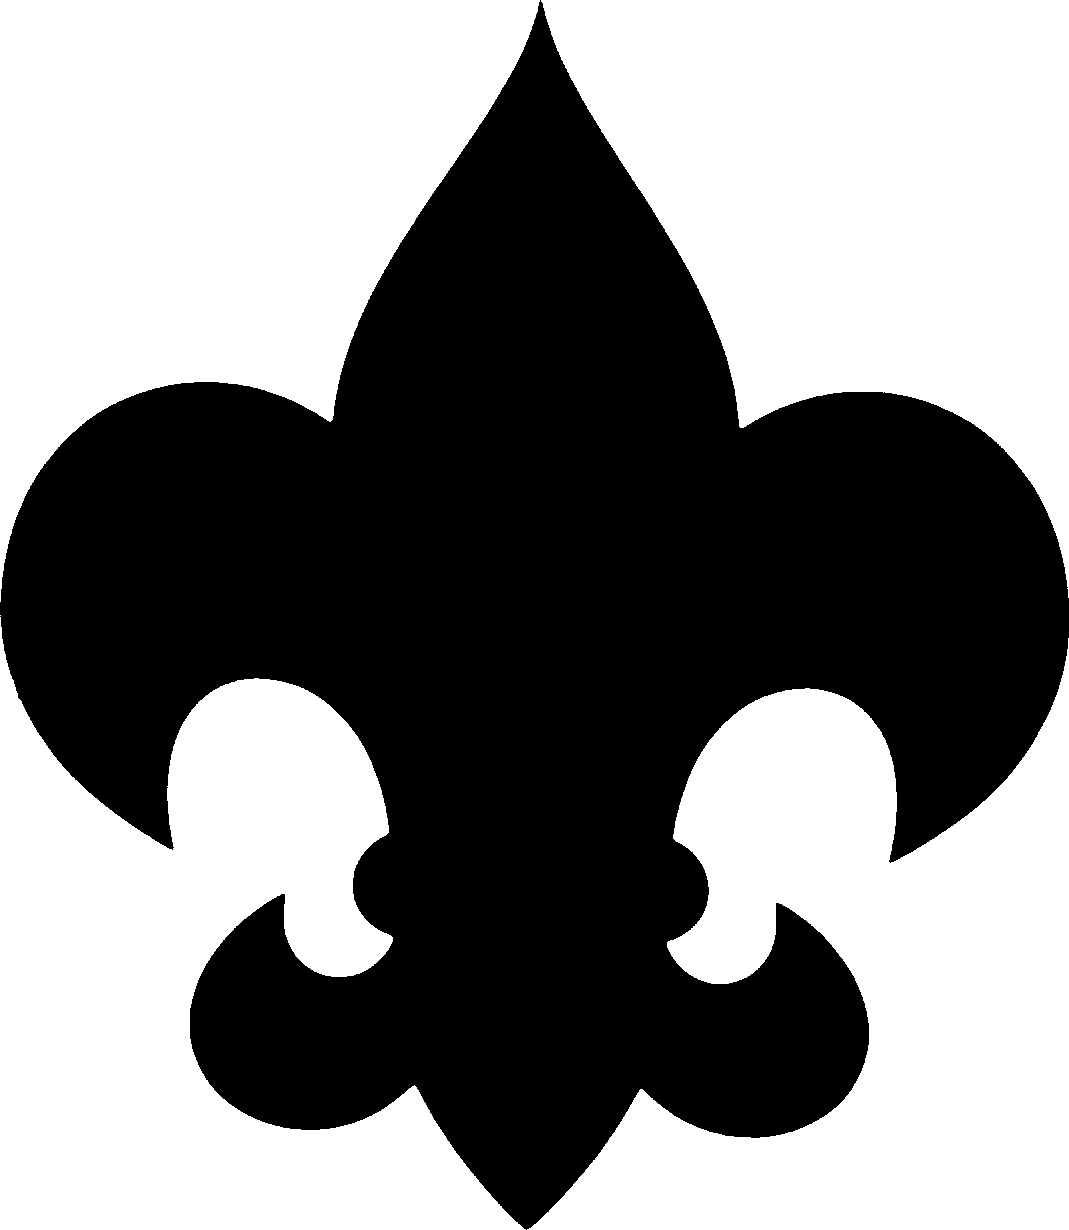 Boy Scout Symbol Clipart